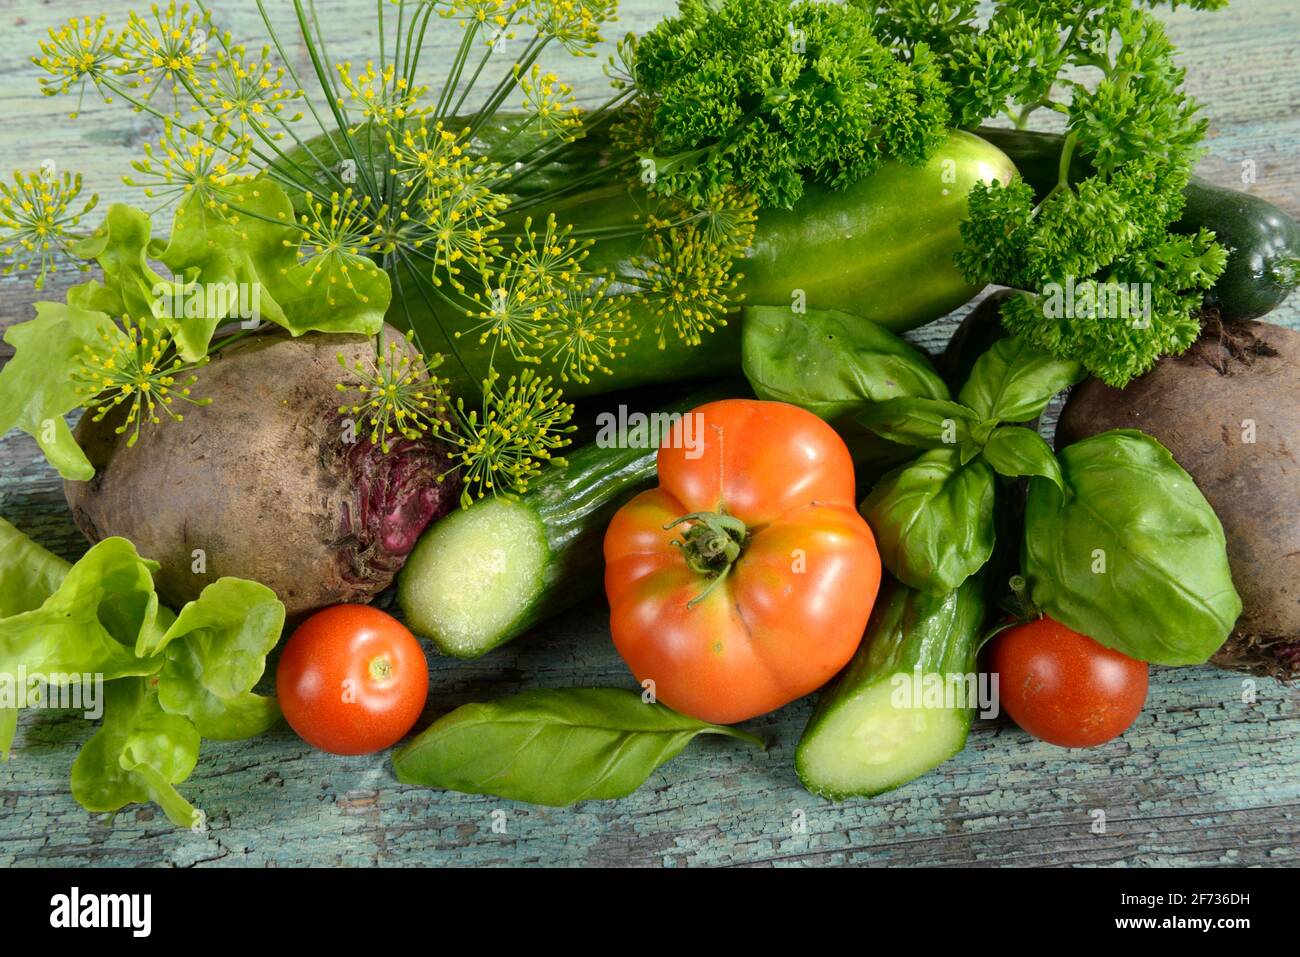 Various vegetables, cucumber, tomatoes (Solanum lycopersicum), basil (Ocimum basilicum), parsley (Petroselinum crispum), dill (Anethum graveolens) Stock Photo